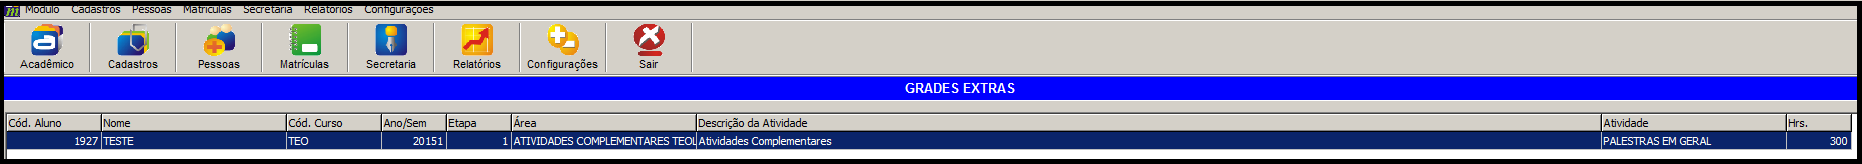  Grades Extras